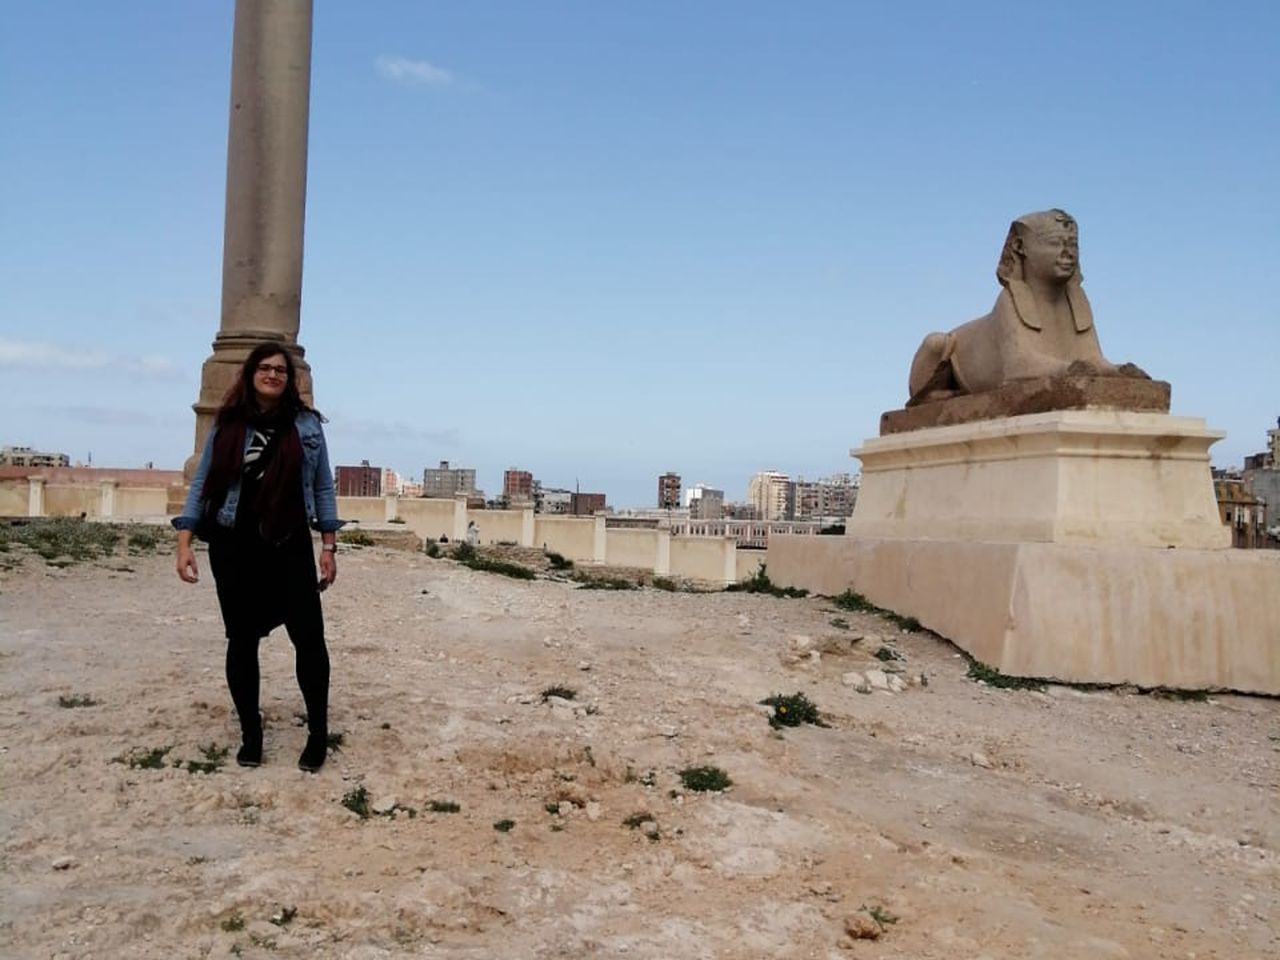 1-дневный автотур в Александрию из Каира  | Цена 112€, отзывы, описание экскурсии